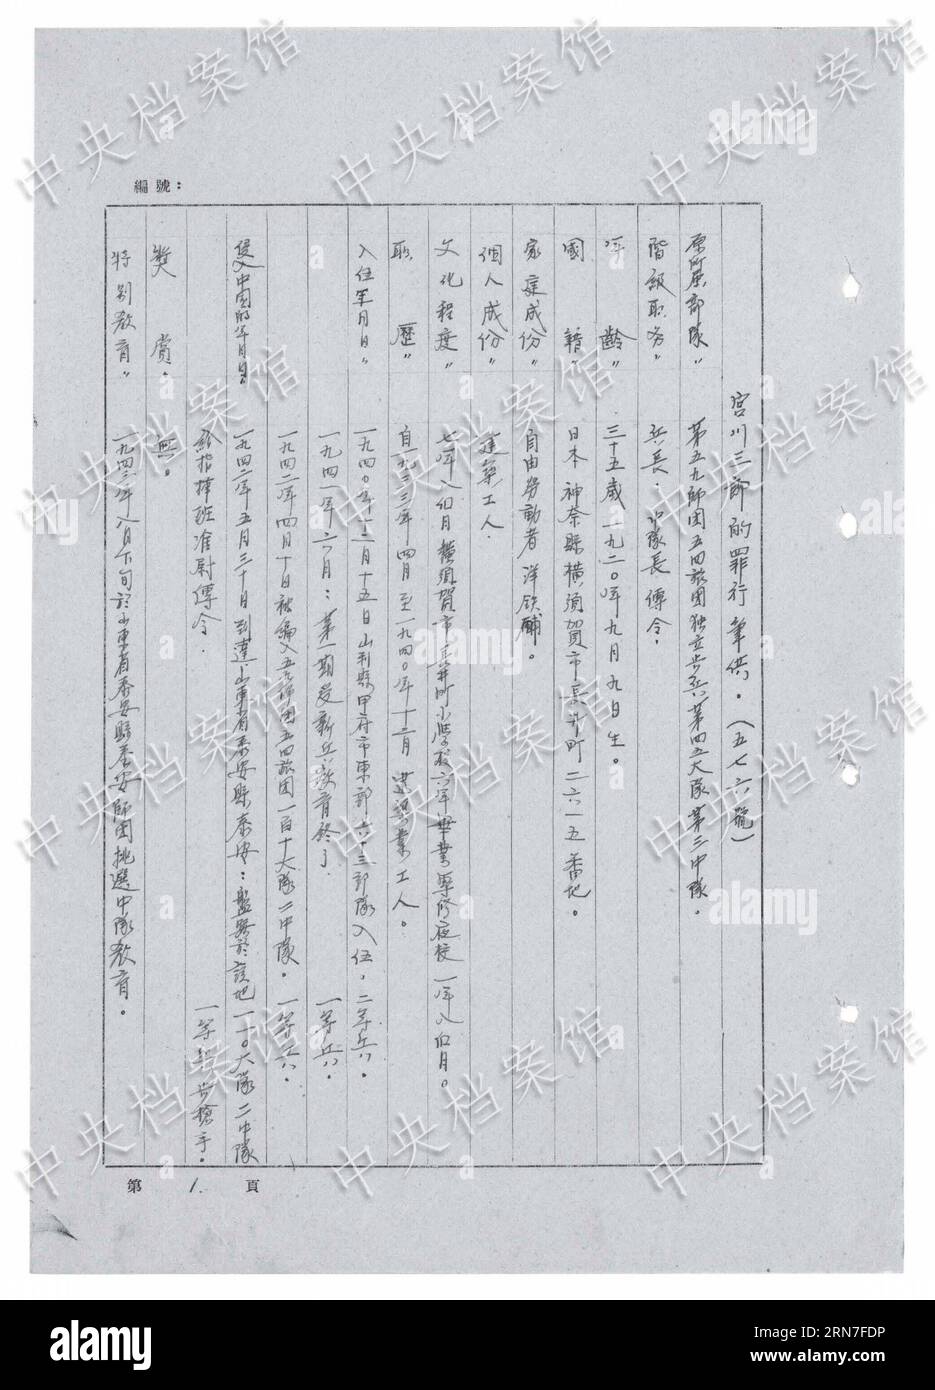 (150904) -- BEIJING, 4 septembre 2015 () -- une photo publiée le 3 septembre 2015 par l'Administration des archives d'État de Chine sur son site web montre la traduction chinoise d'un extrait de la confession écrite du criminel de guerre japonais Saburo Miyagawa. L’Administration des Archives d’État (SAA) de Chine a publié jeudi la confession de Saburo Miyagawa. L'homme, né en 1920, a rejoint les troupes d'invasion japonaises en 1942 et a été capturé en Chine en août 1945. Une confession manuscrite de Miyagawa décrit que les troupes japonaises tuent collectivement 12 civils chinois à l'aide de grenades à main dans l'est de la Chine Banque D'Images